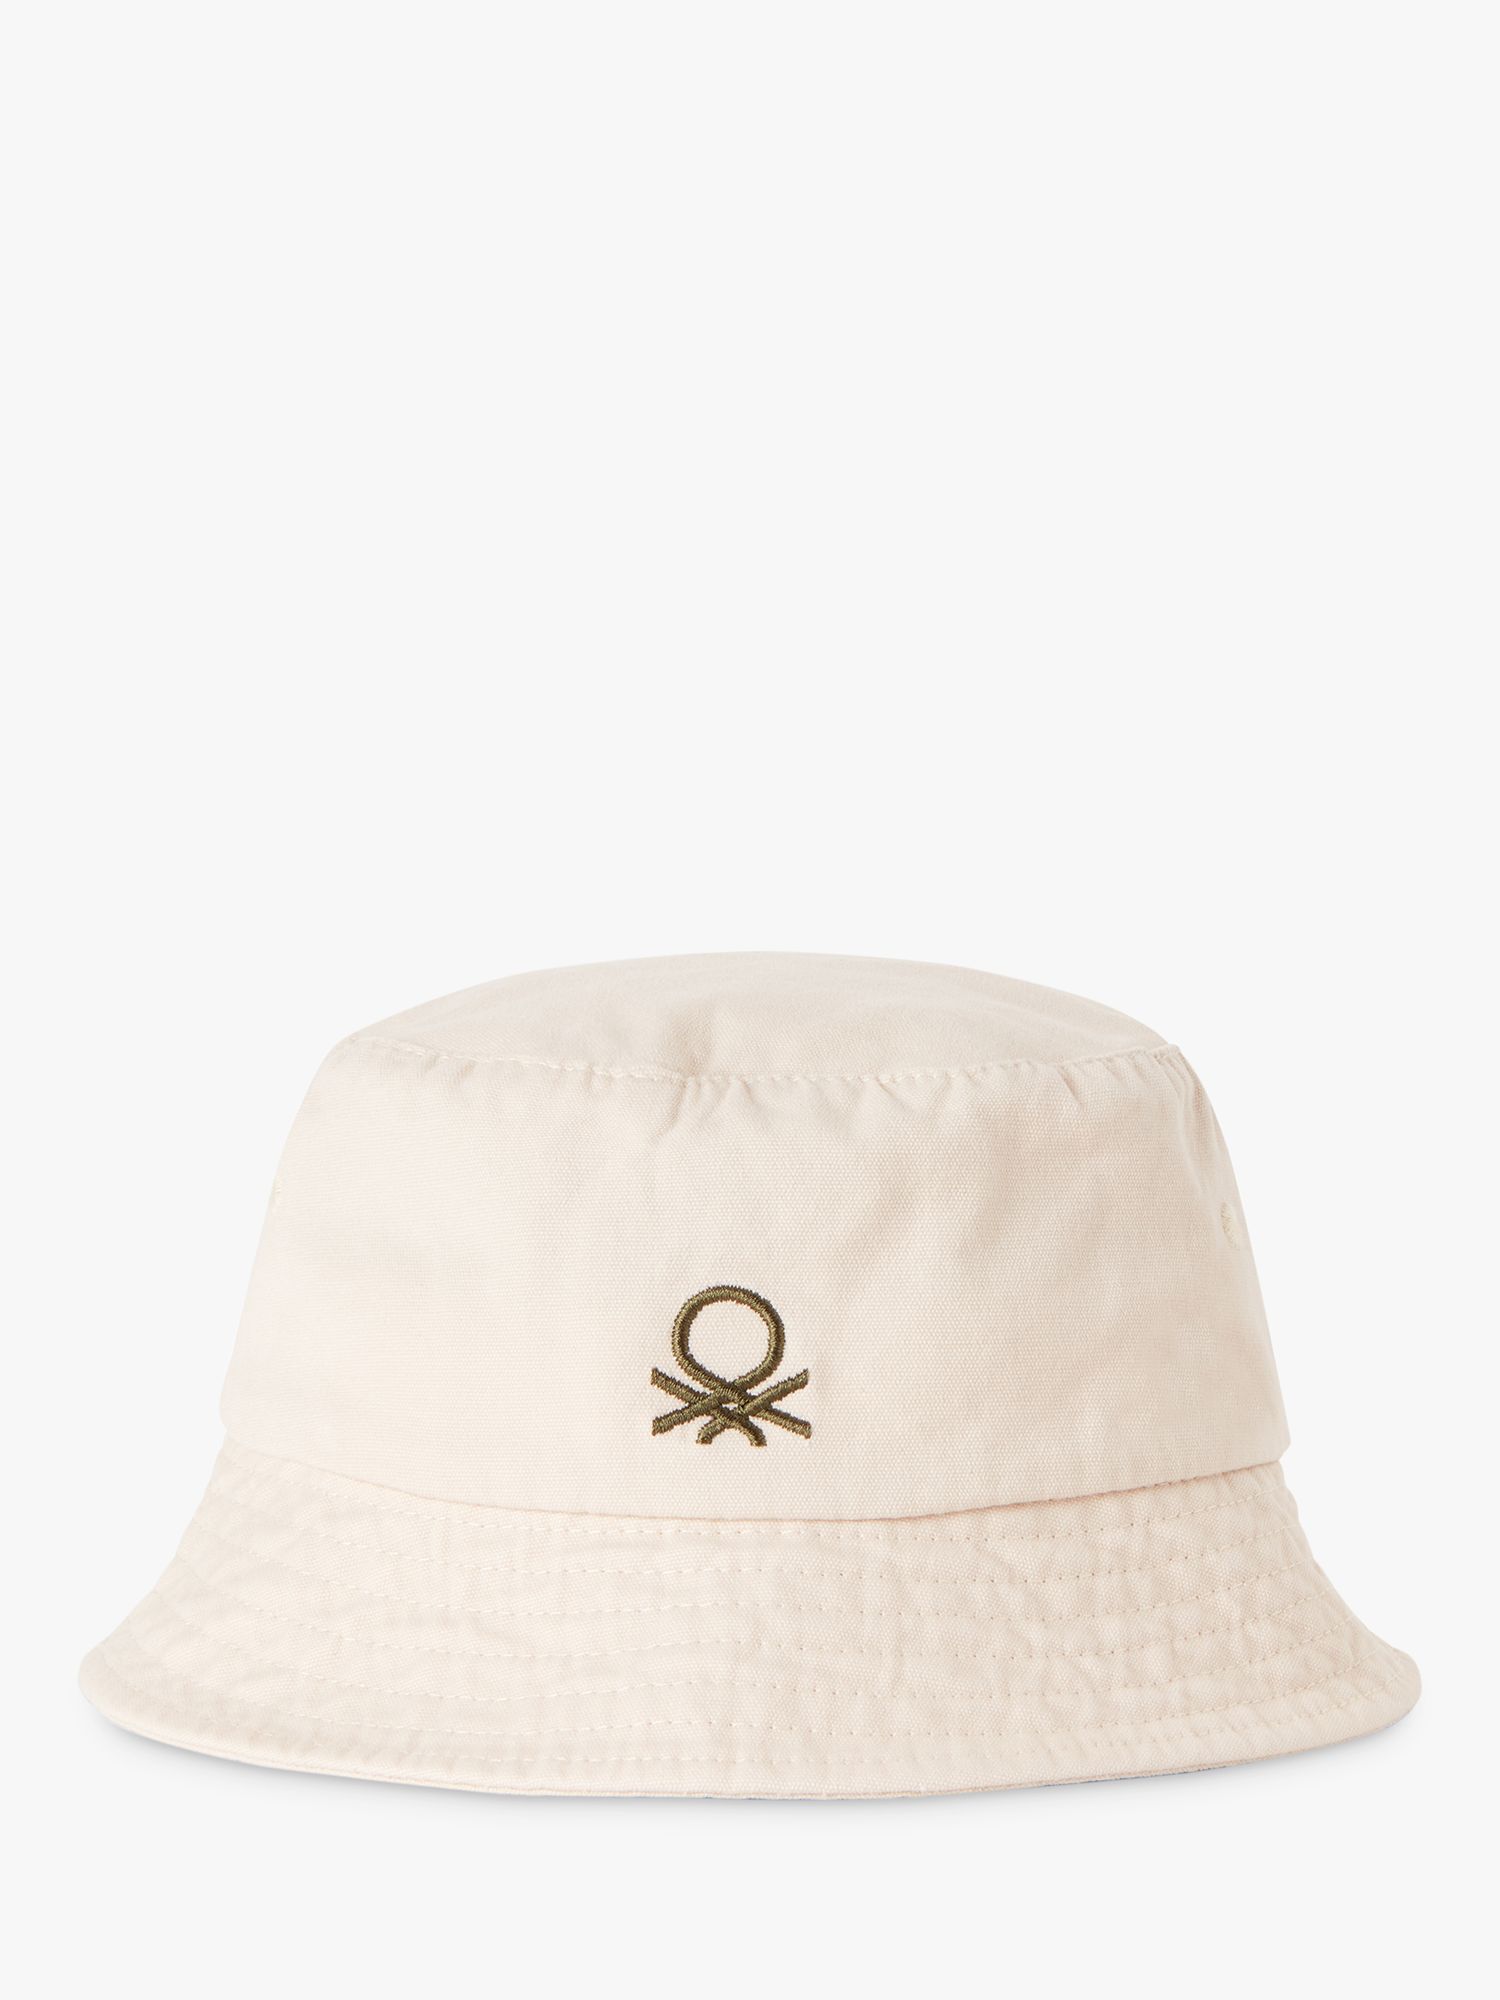 Benetton Kids' Logo Embroidered Bucket Hat, Cream, S